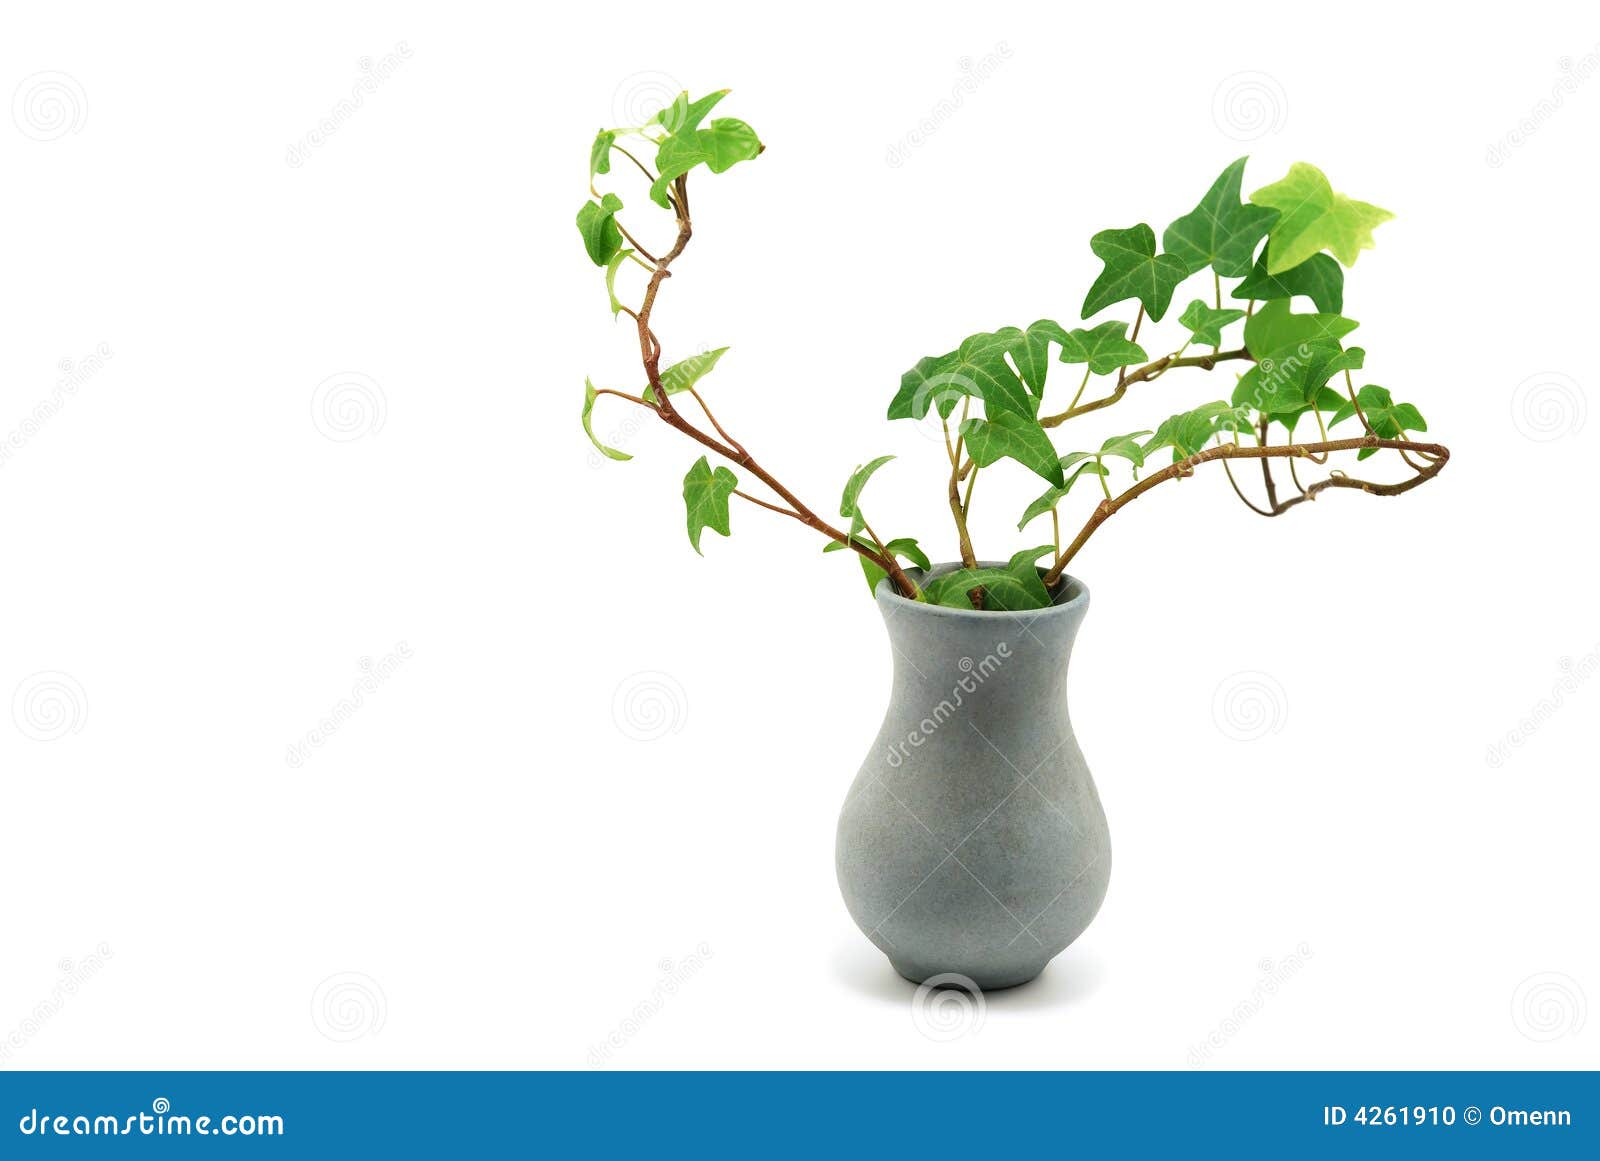 常春藤 水培植物 不用浇水美观简单 盆栽 净化空气植物_fangang2008